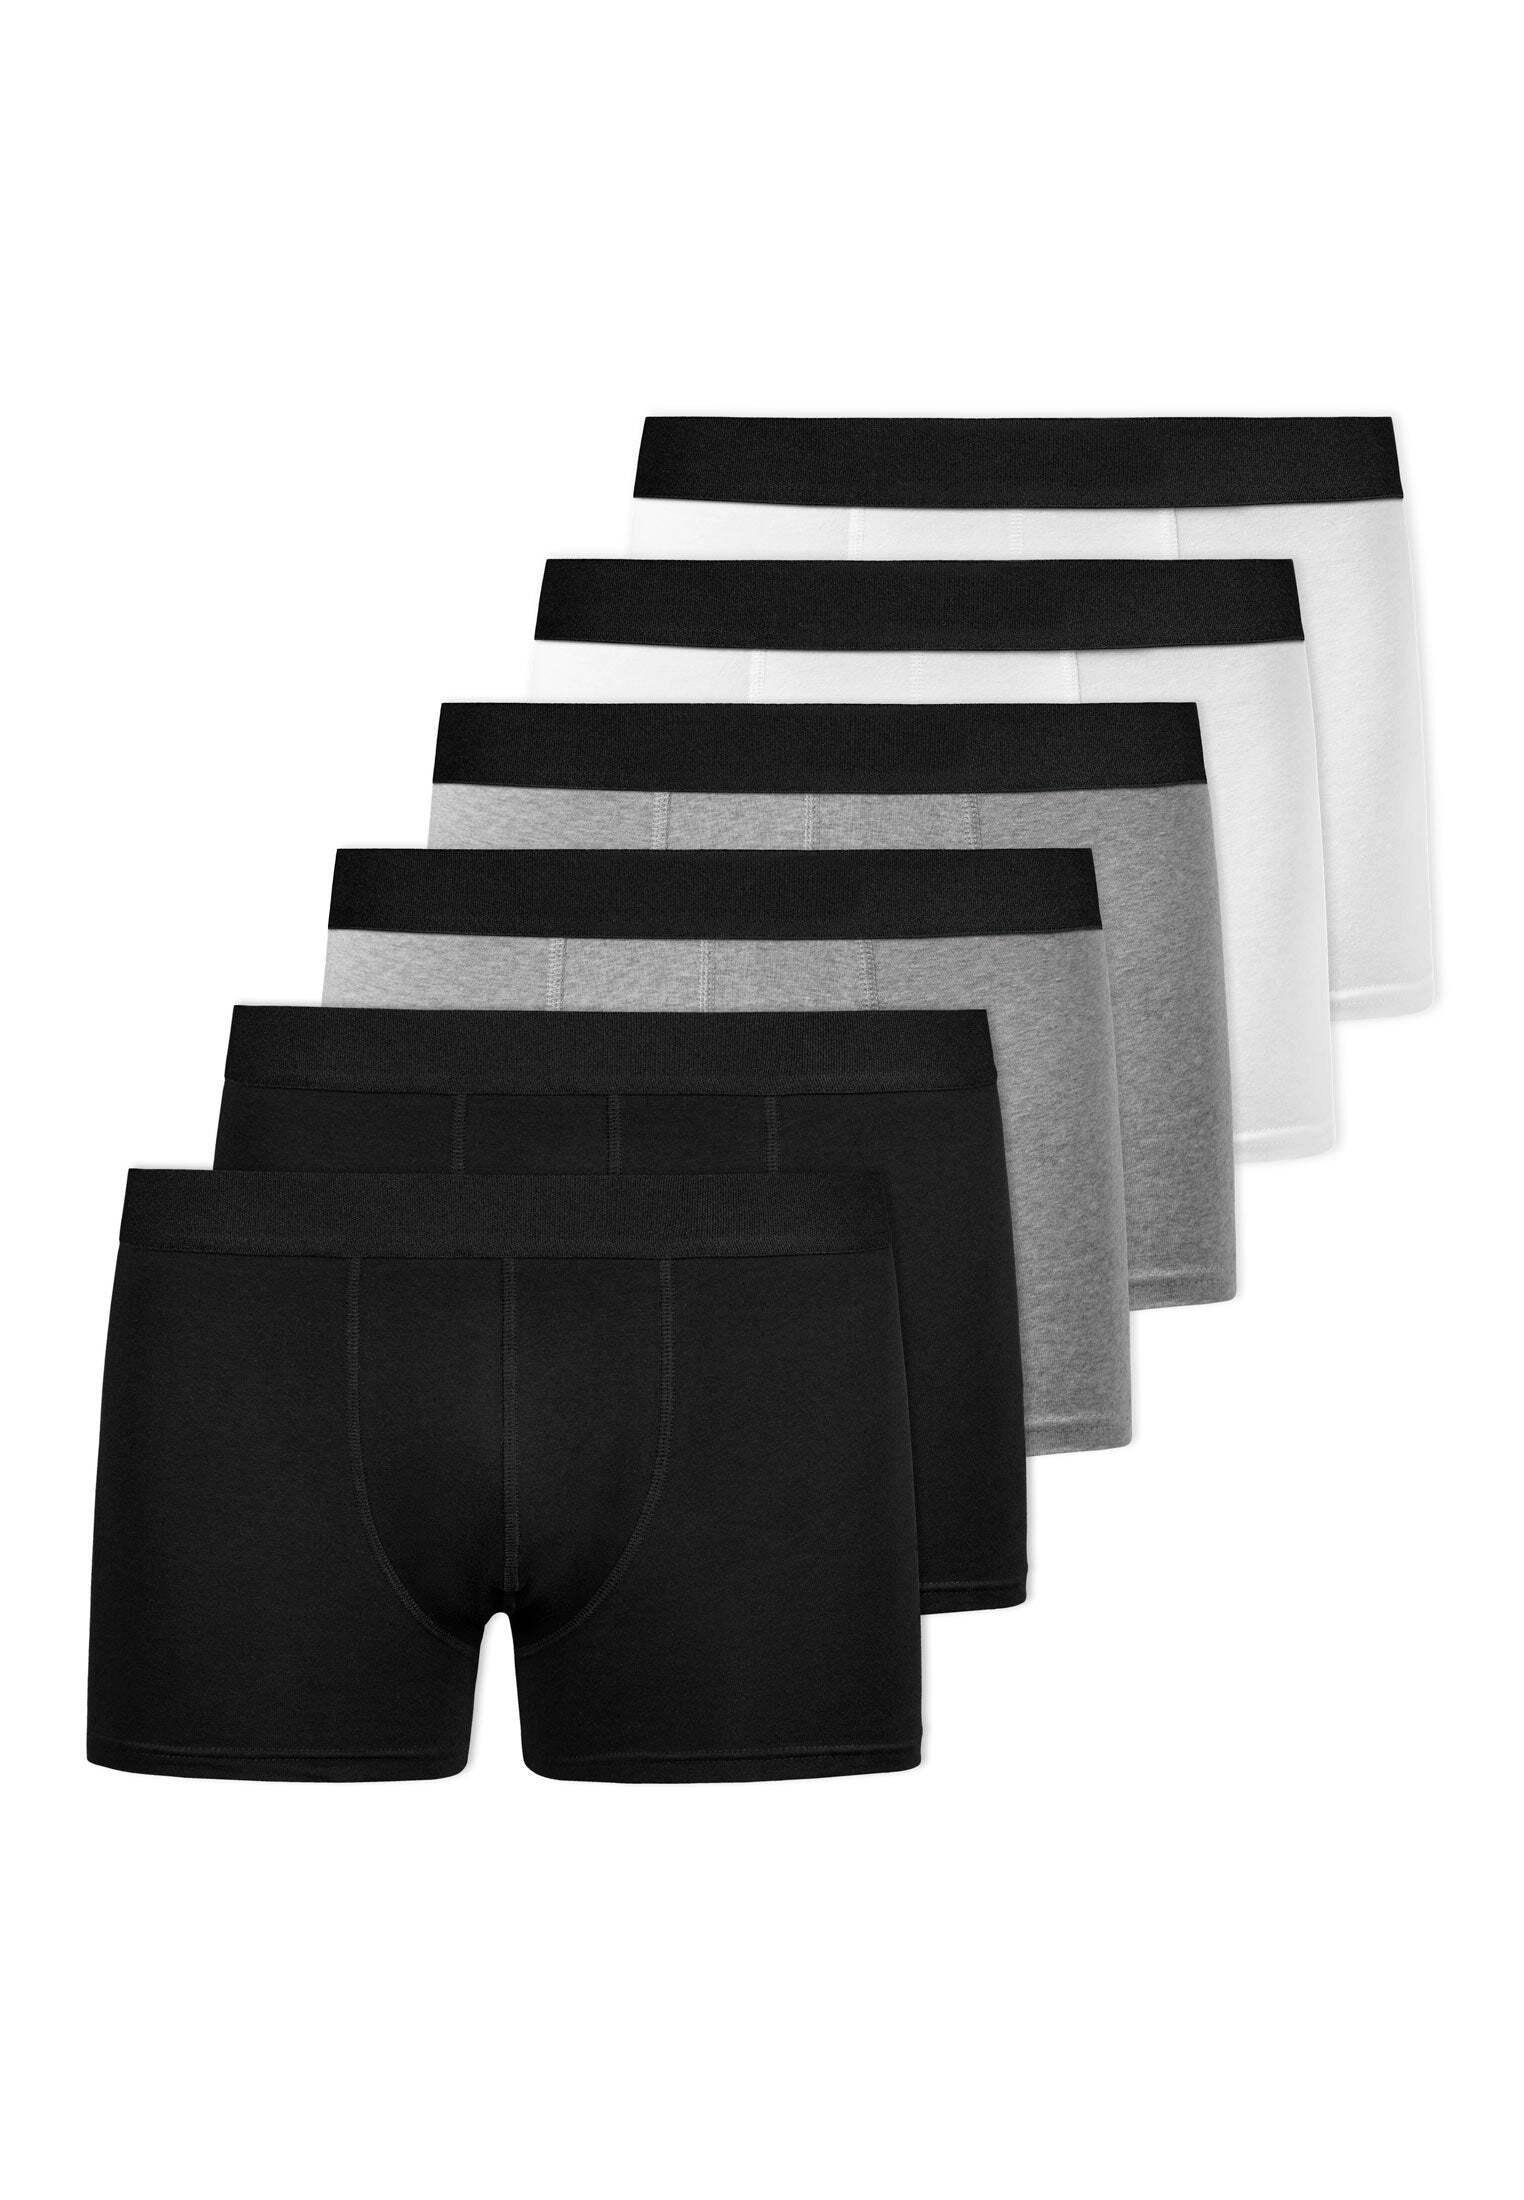 Snocks Boxershorts ohne Logo aus Bio-Baumwolle Unterhose Herren Mix  (Schwarz/Weiß/Grau) im Online Shop von SportScheck kaufen